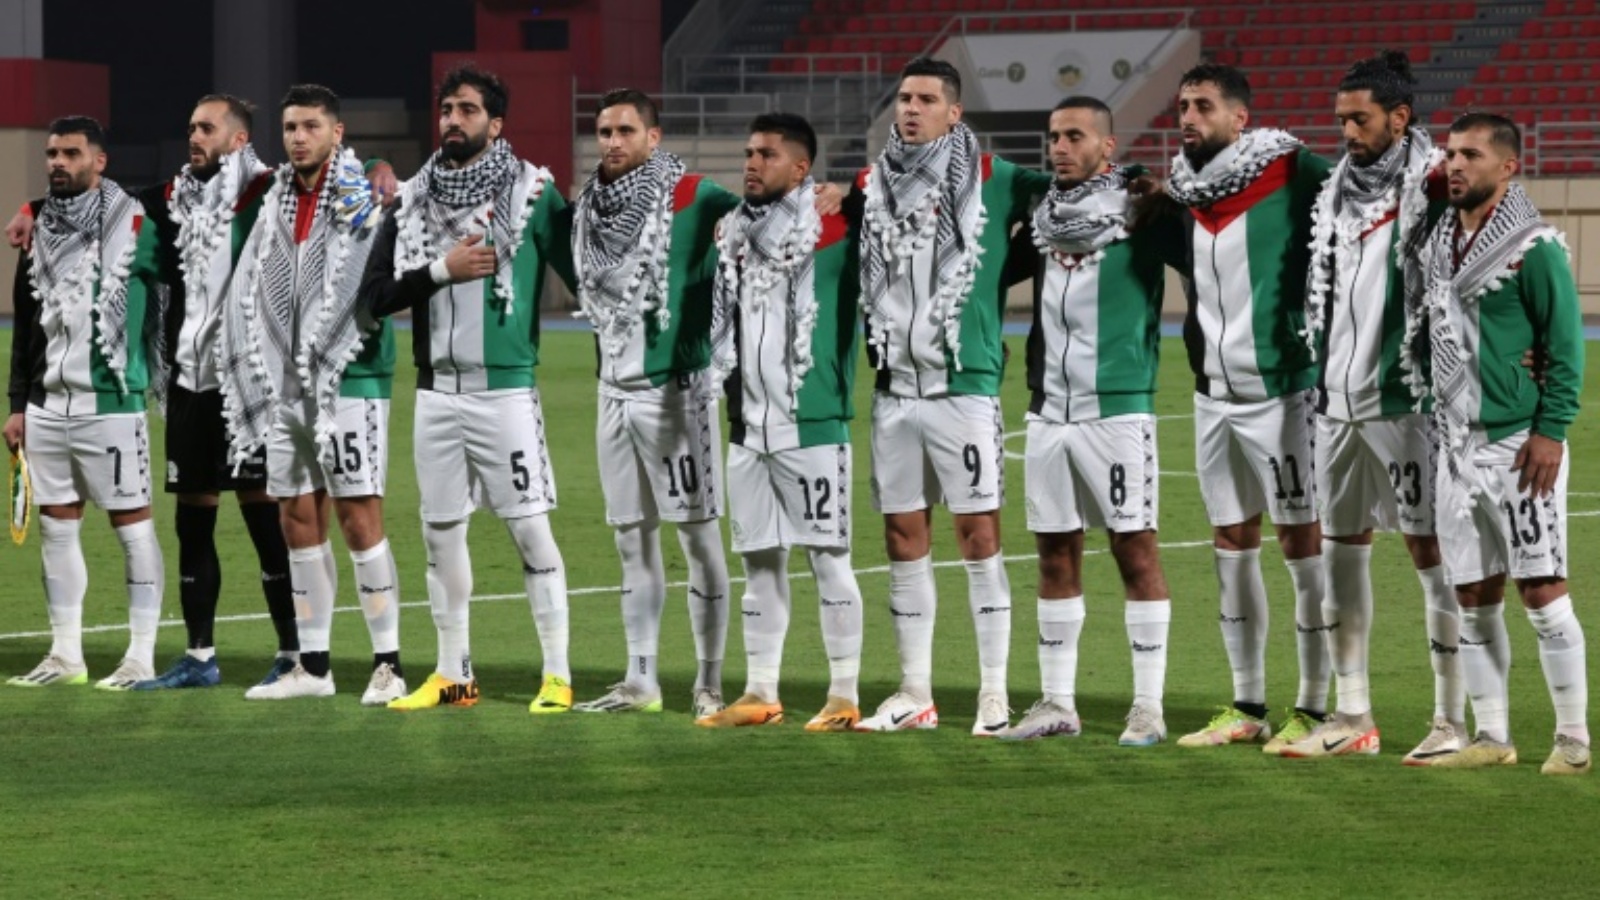 لاعبو المنتخب الفلسطيني يؤدون النشيد الوطني مرتدين الكوفيّات قبيل مواجهة لبنان في التصفيات الآسيوية المشتركة المؤهلة إلى مونديال 2026 وكأس آسيا 2027 في مدينة الشارقة الإماراتية في 16 نوفمبر 2023